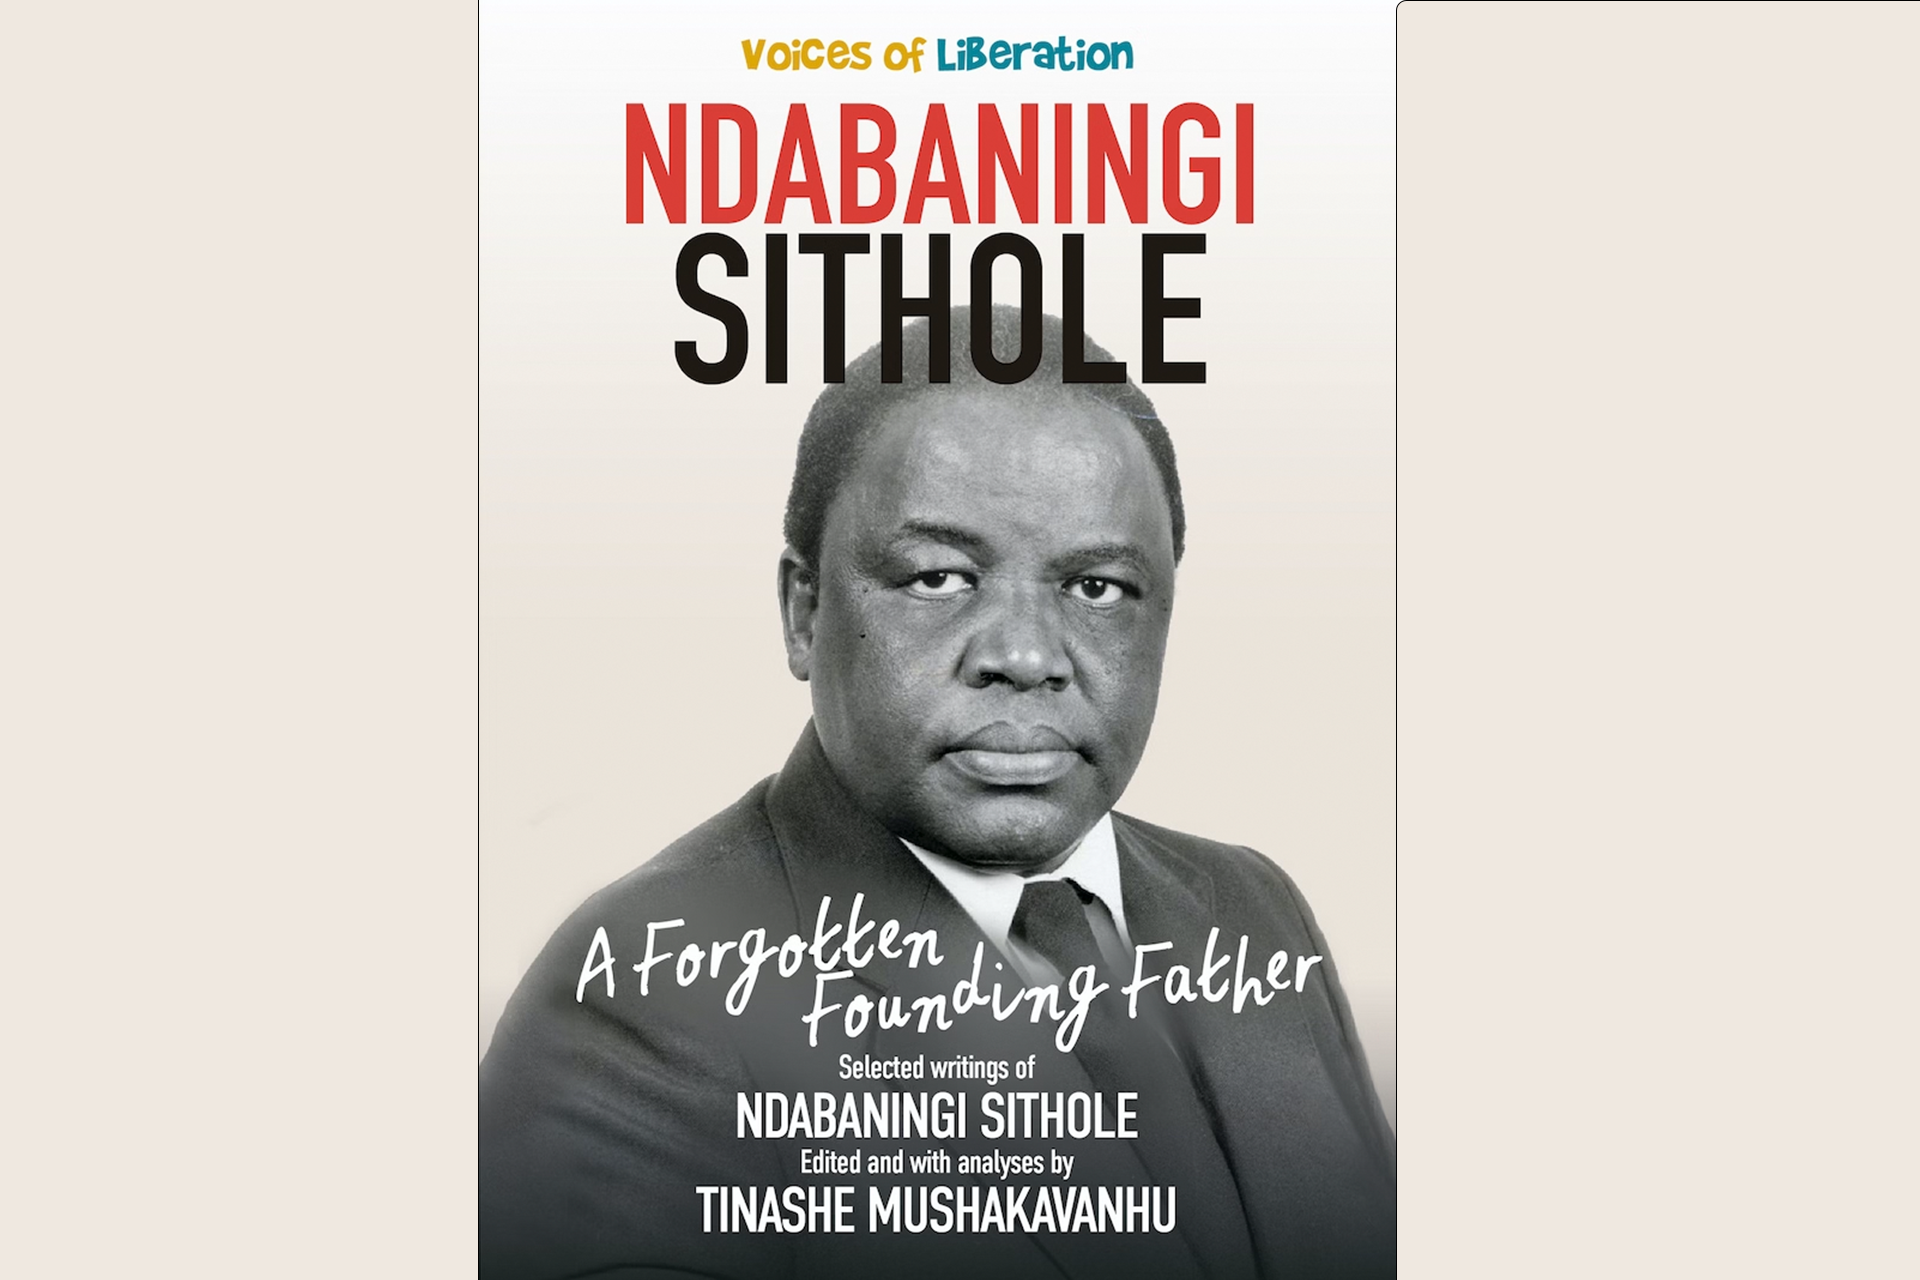 Ndabaningi Sithole A forgotten Founding Father